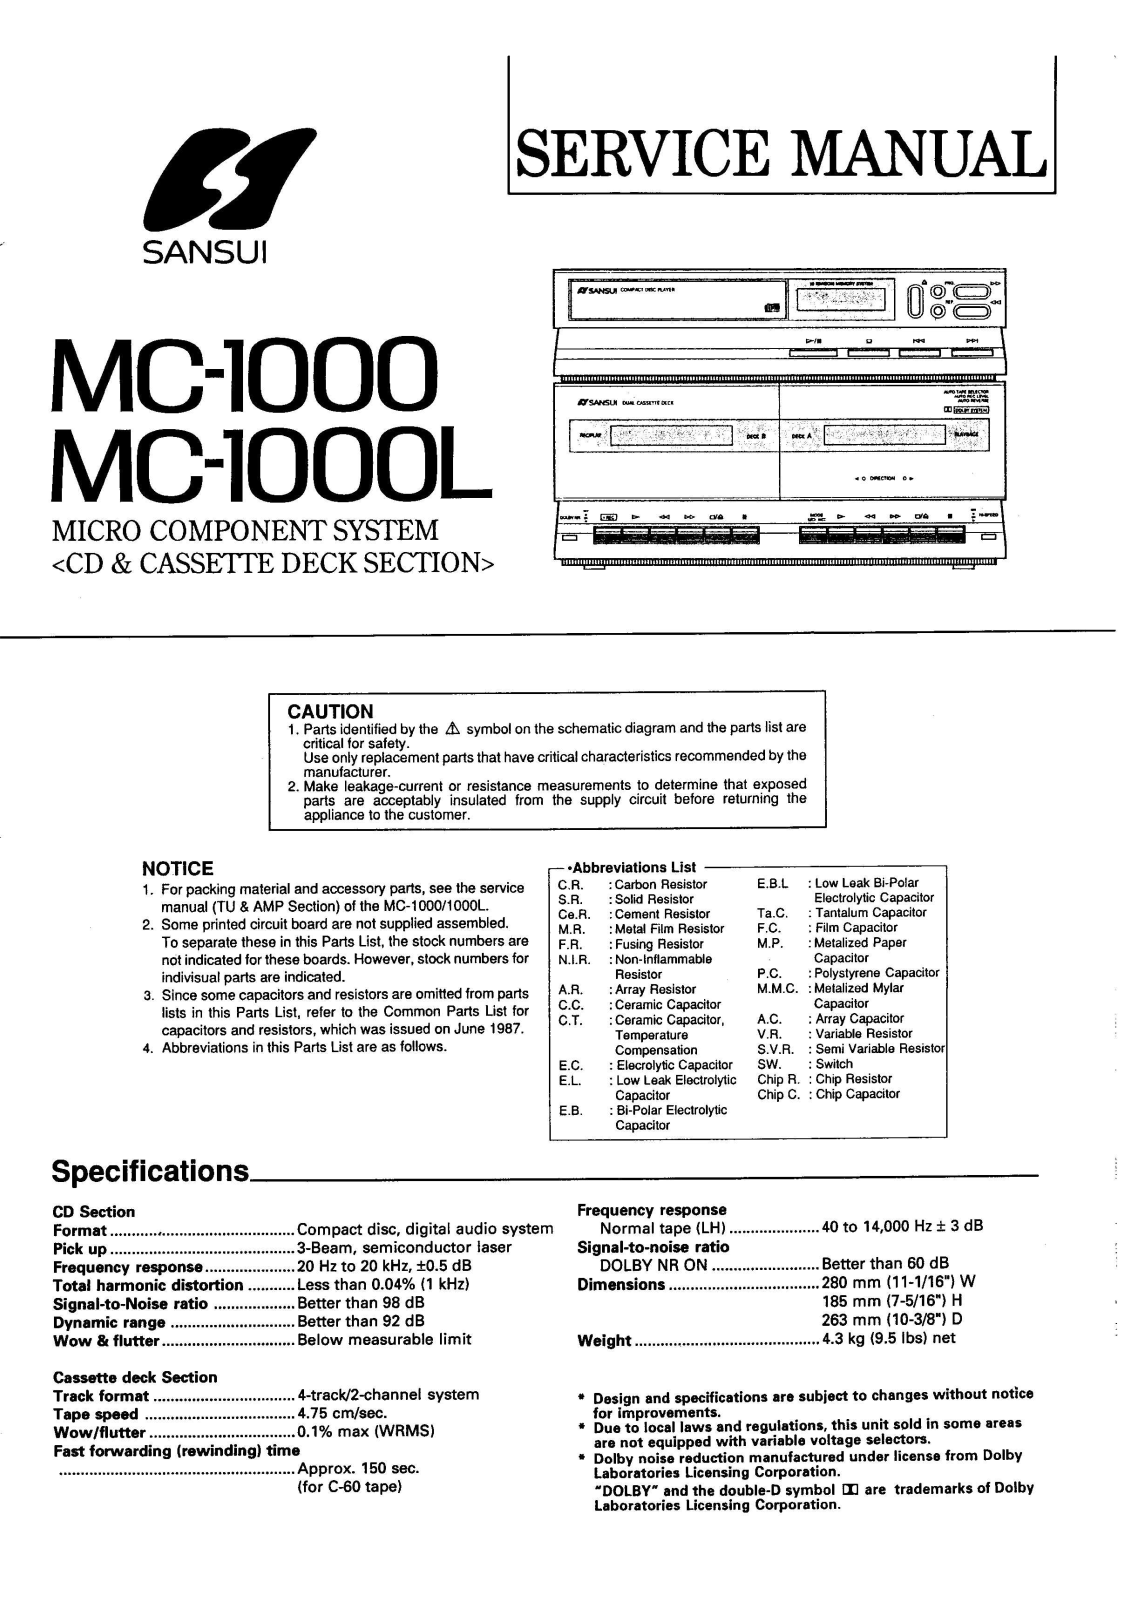 Sansui MC-1000, MC-1000-L Service Manual